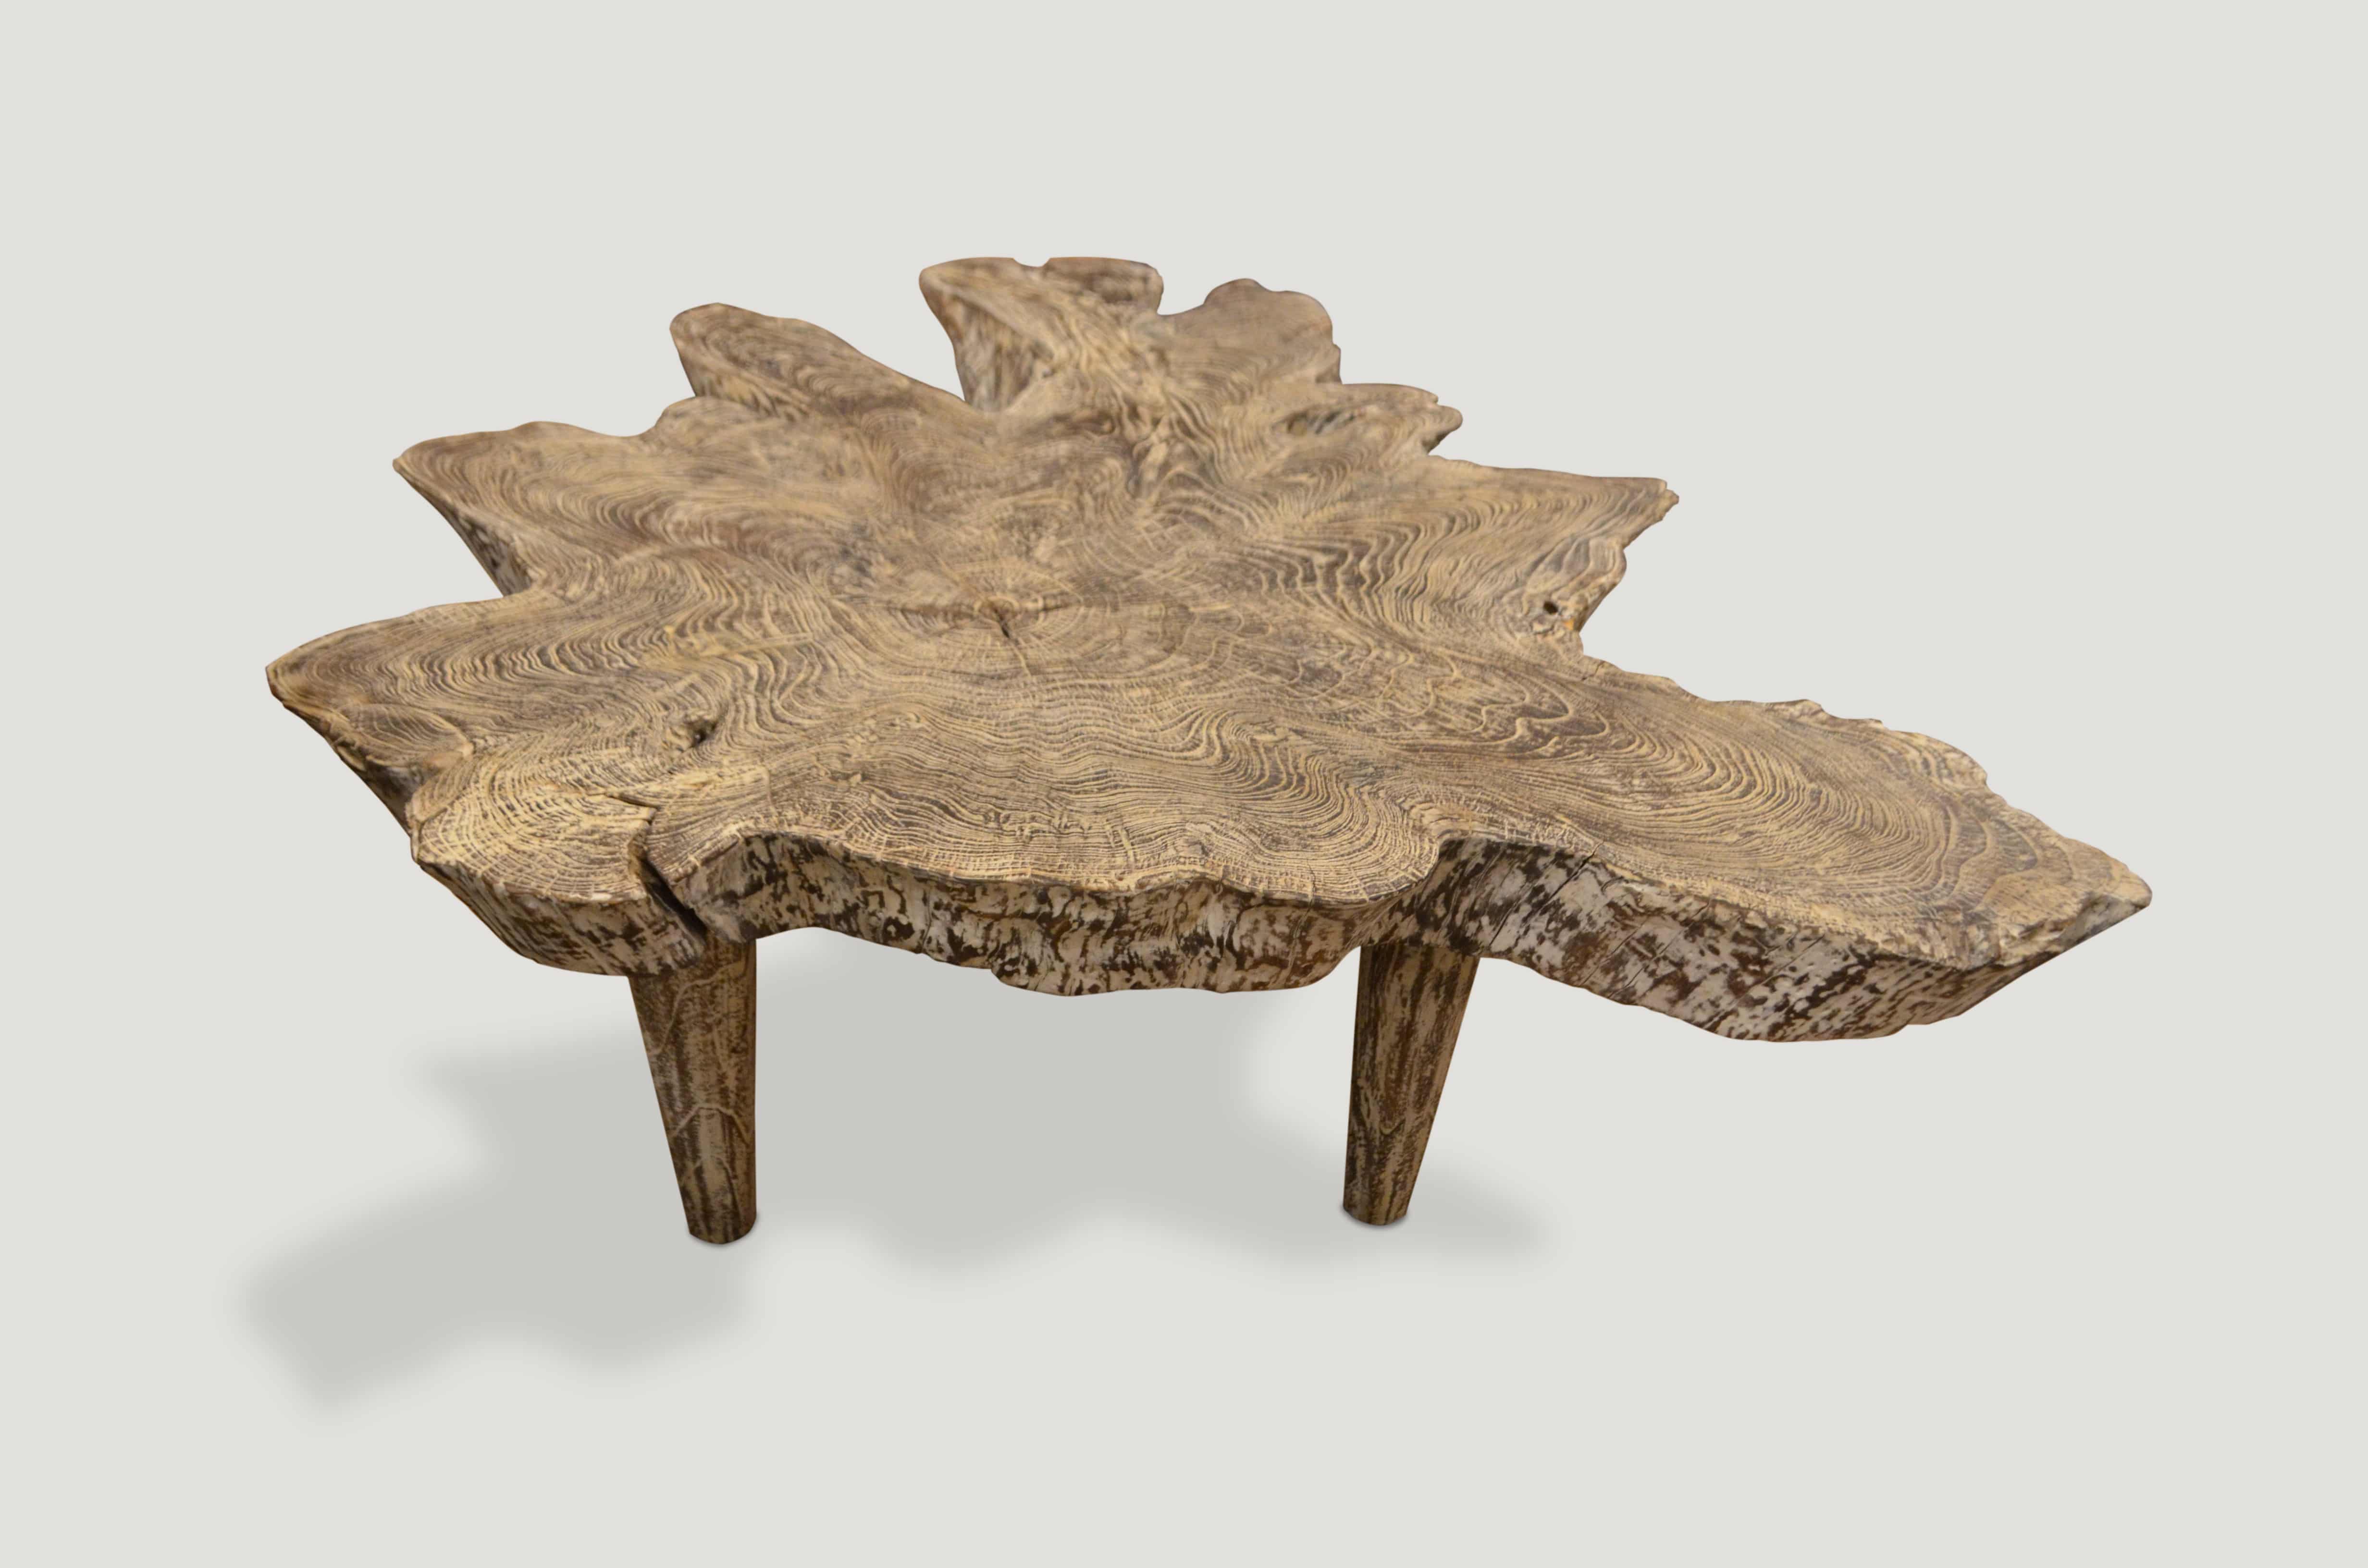 cerused teak wood coffee table